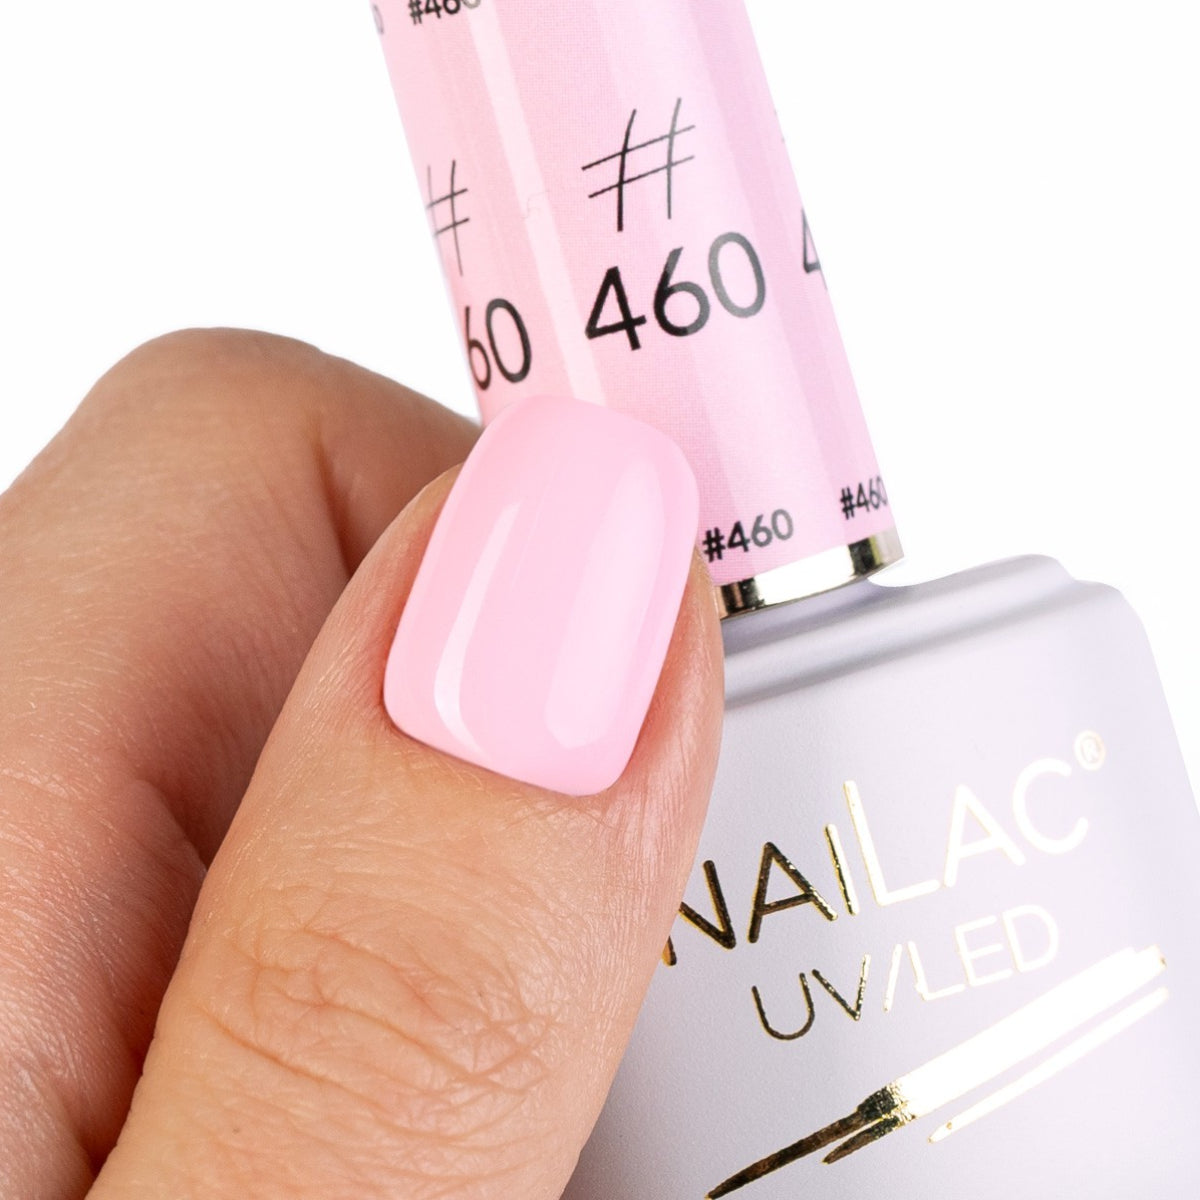 NaiLac UV/LED Gel Nail Polish 460 Swatch